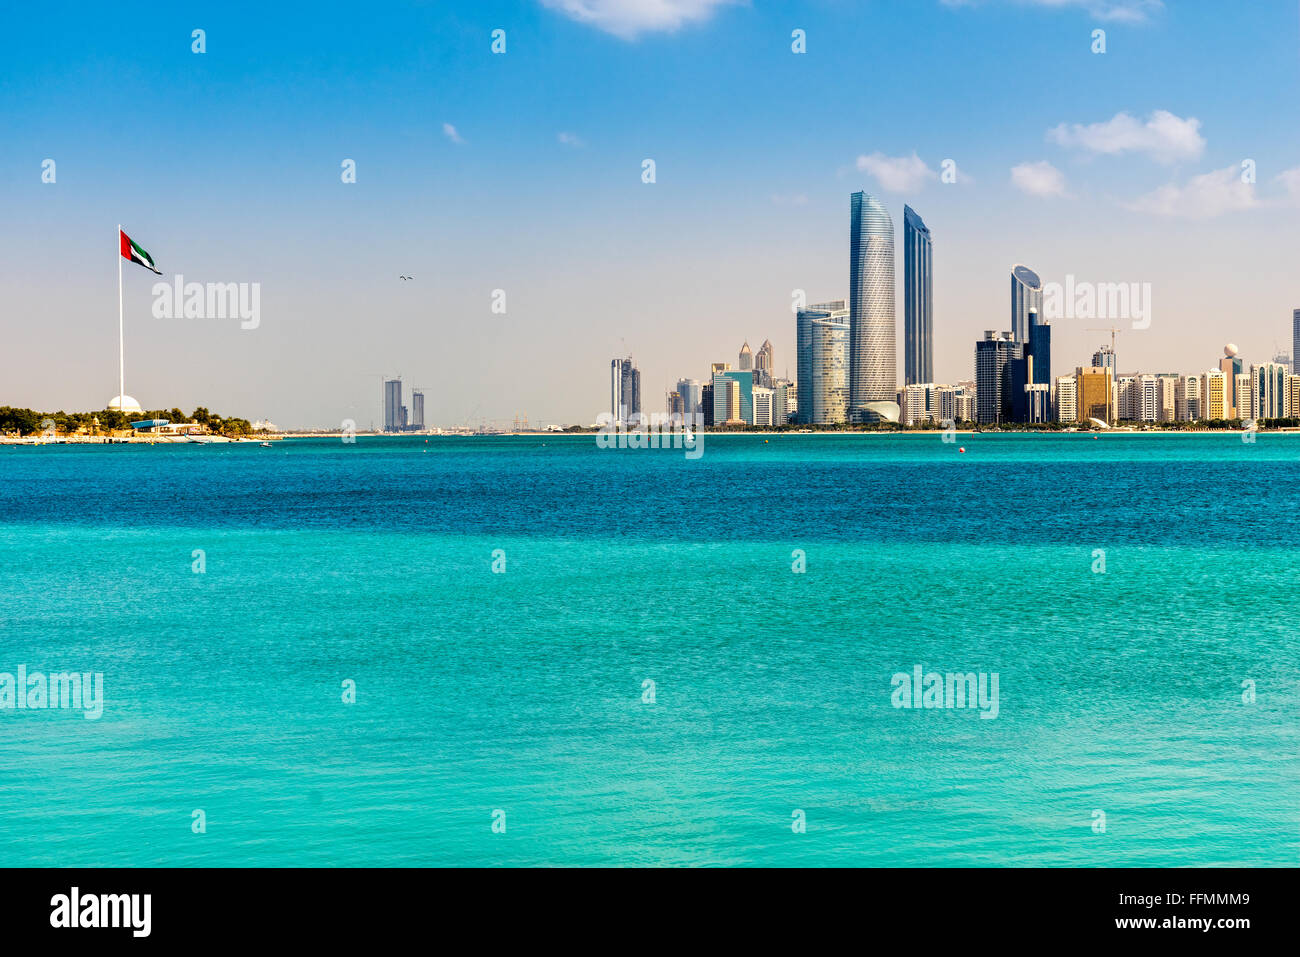 Abu Dhabi Skyline, United Arab Emirates Stock Photo